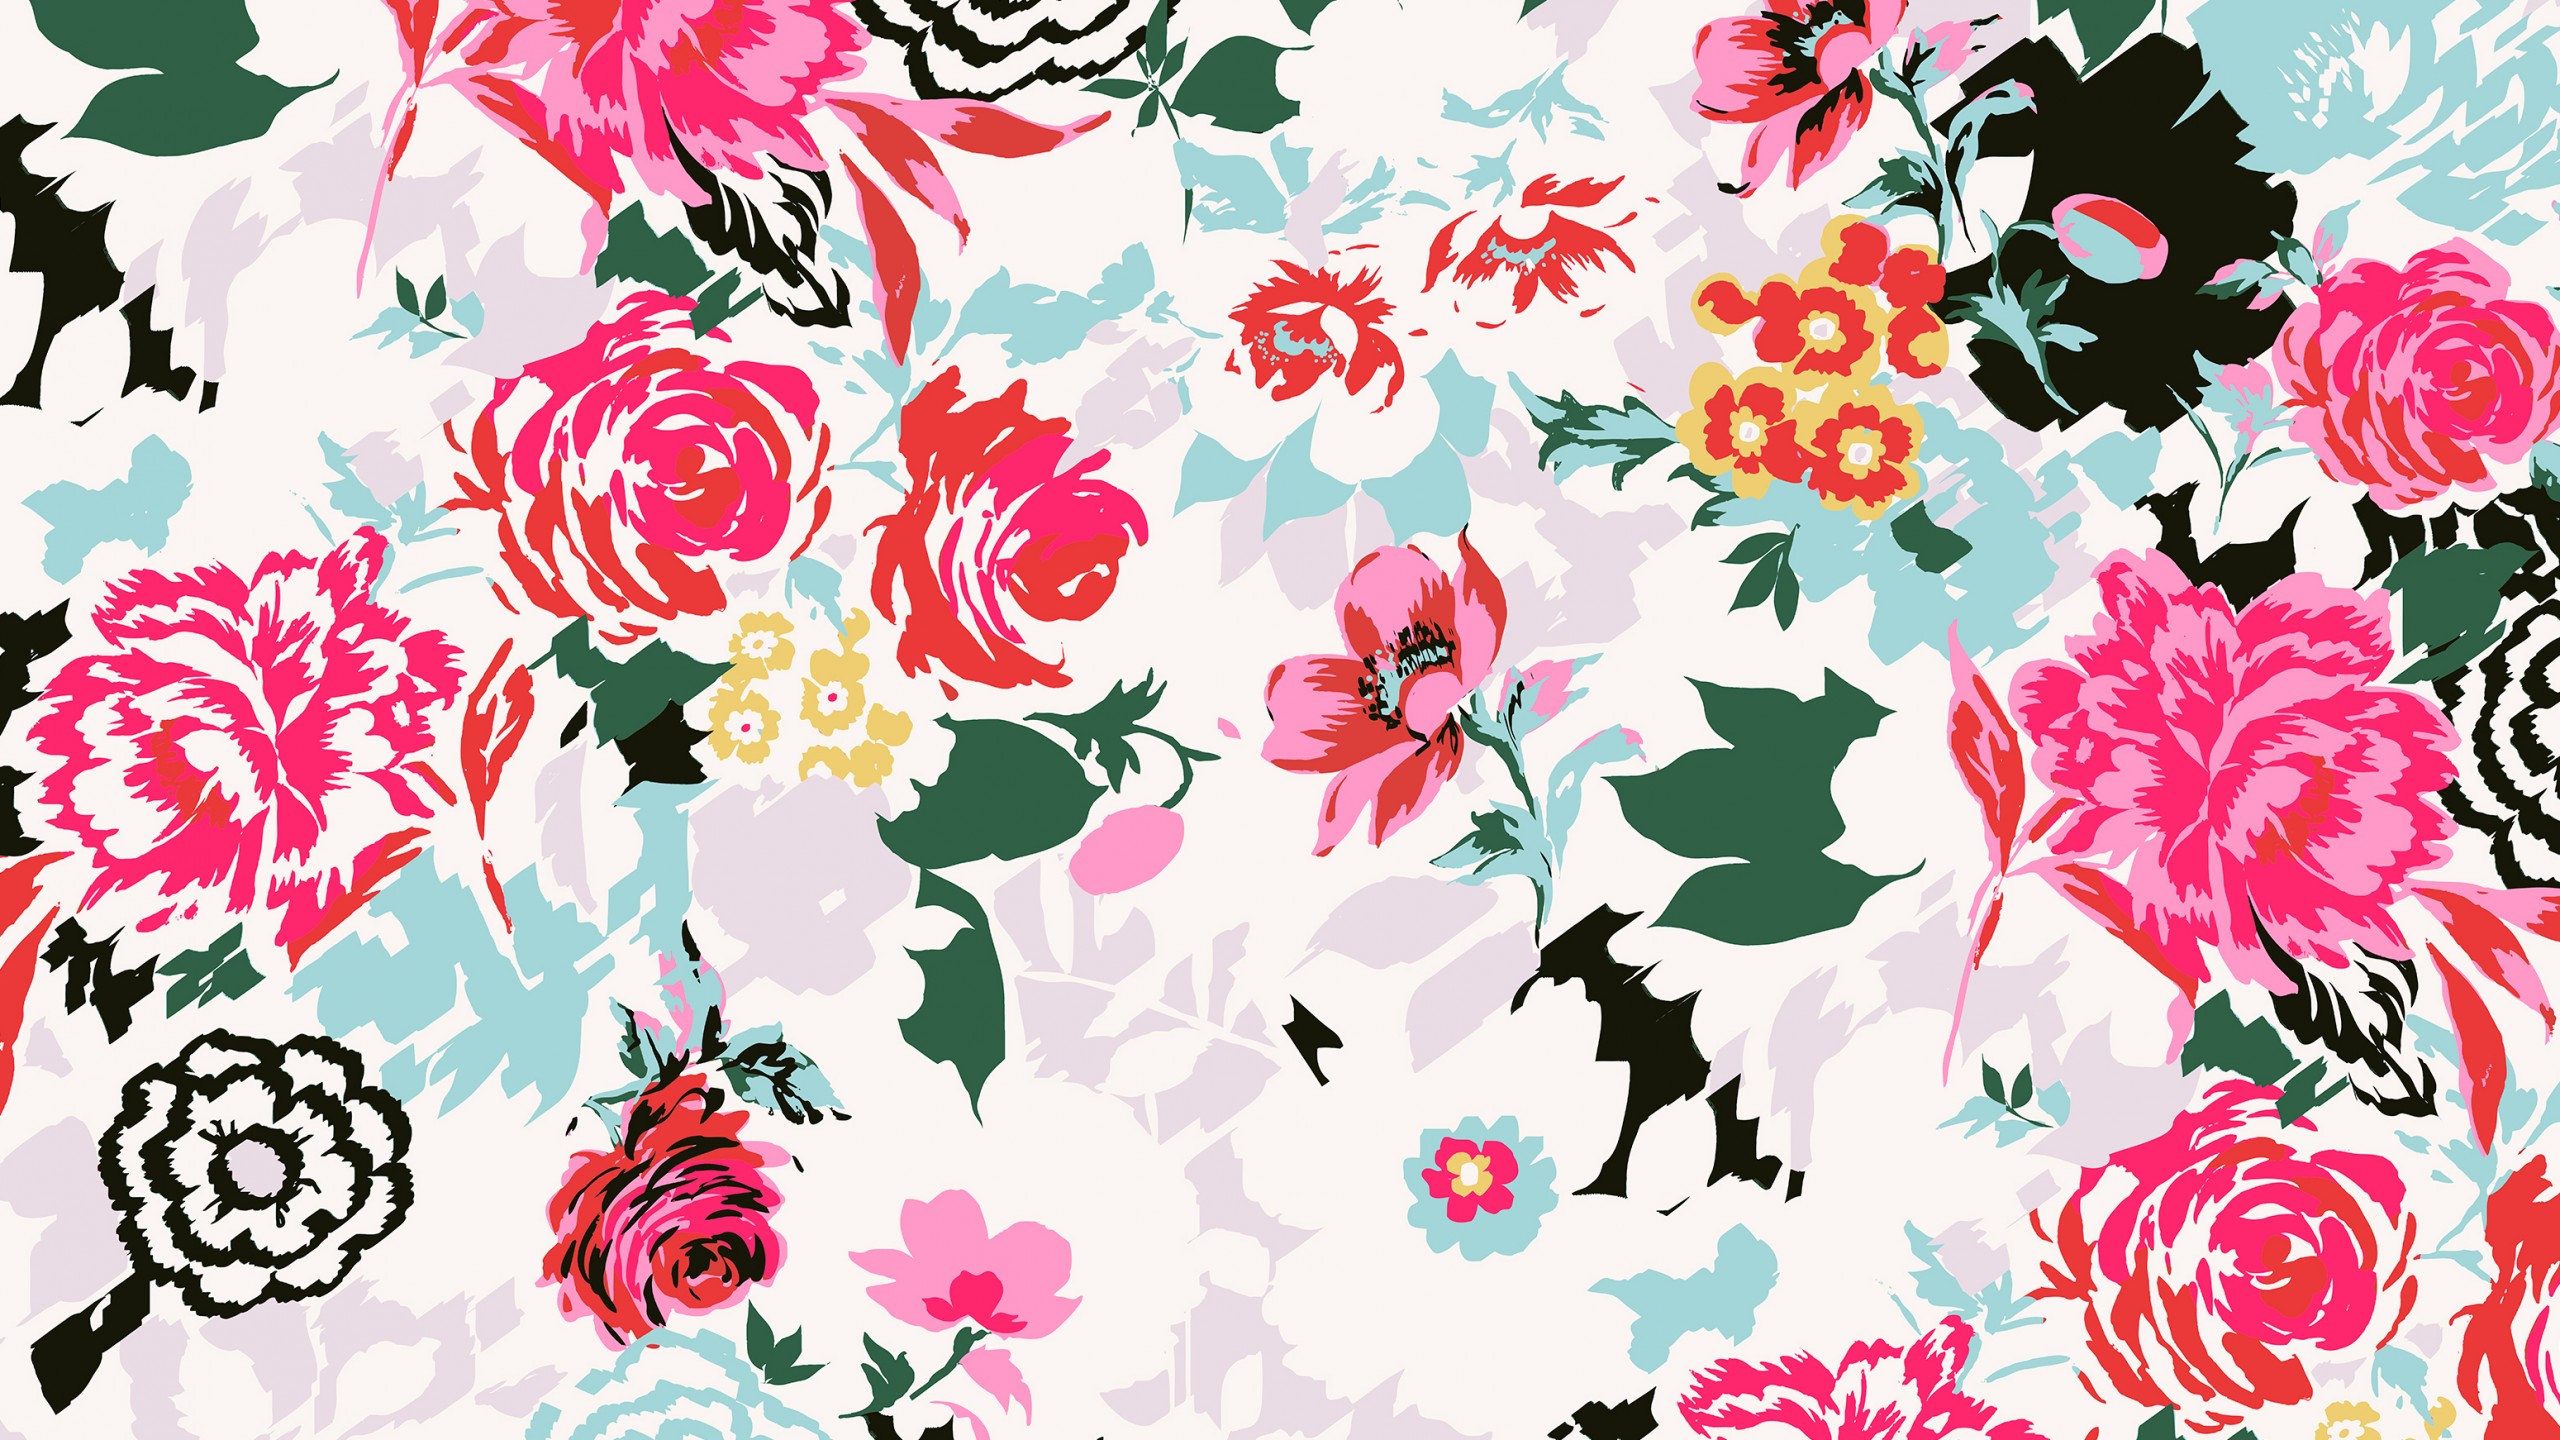 watercolor floral wallpaper,pattern,floral design,pink,flower,botany